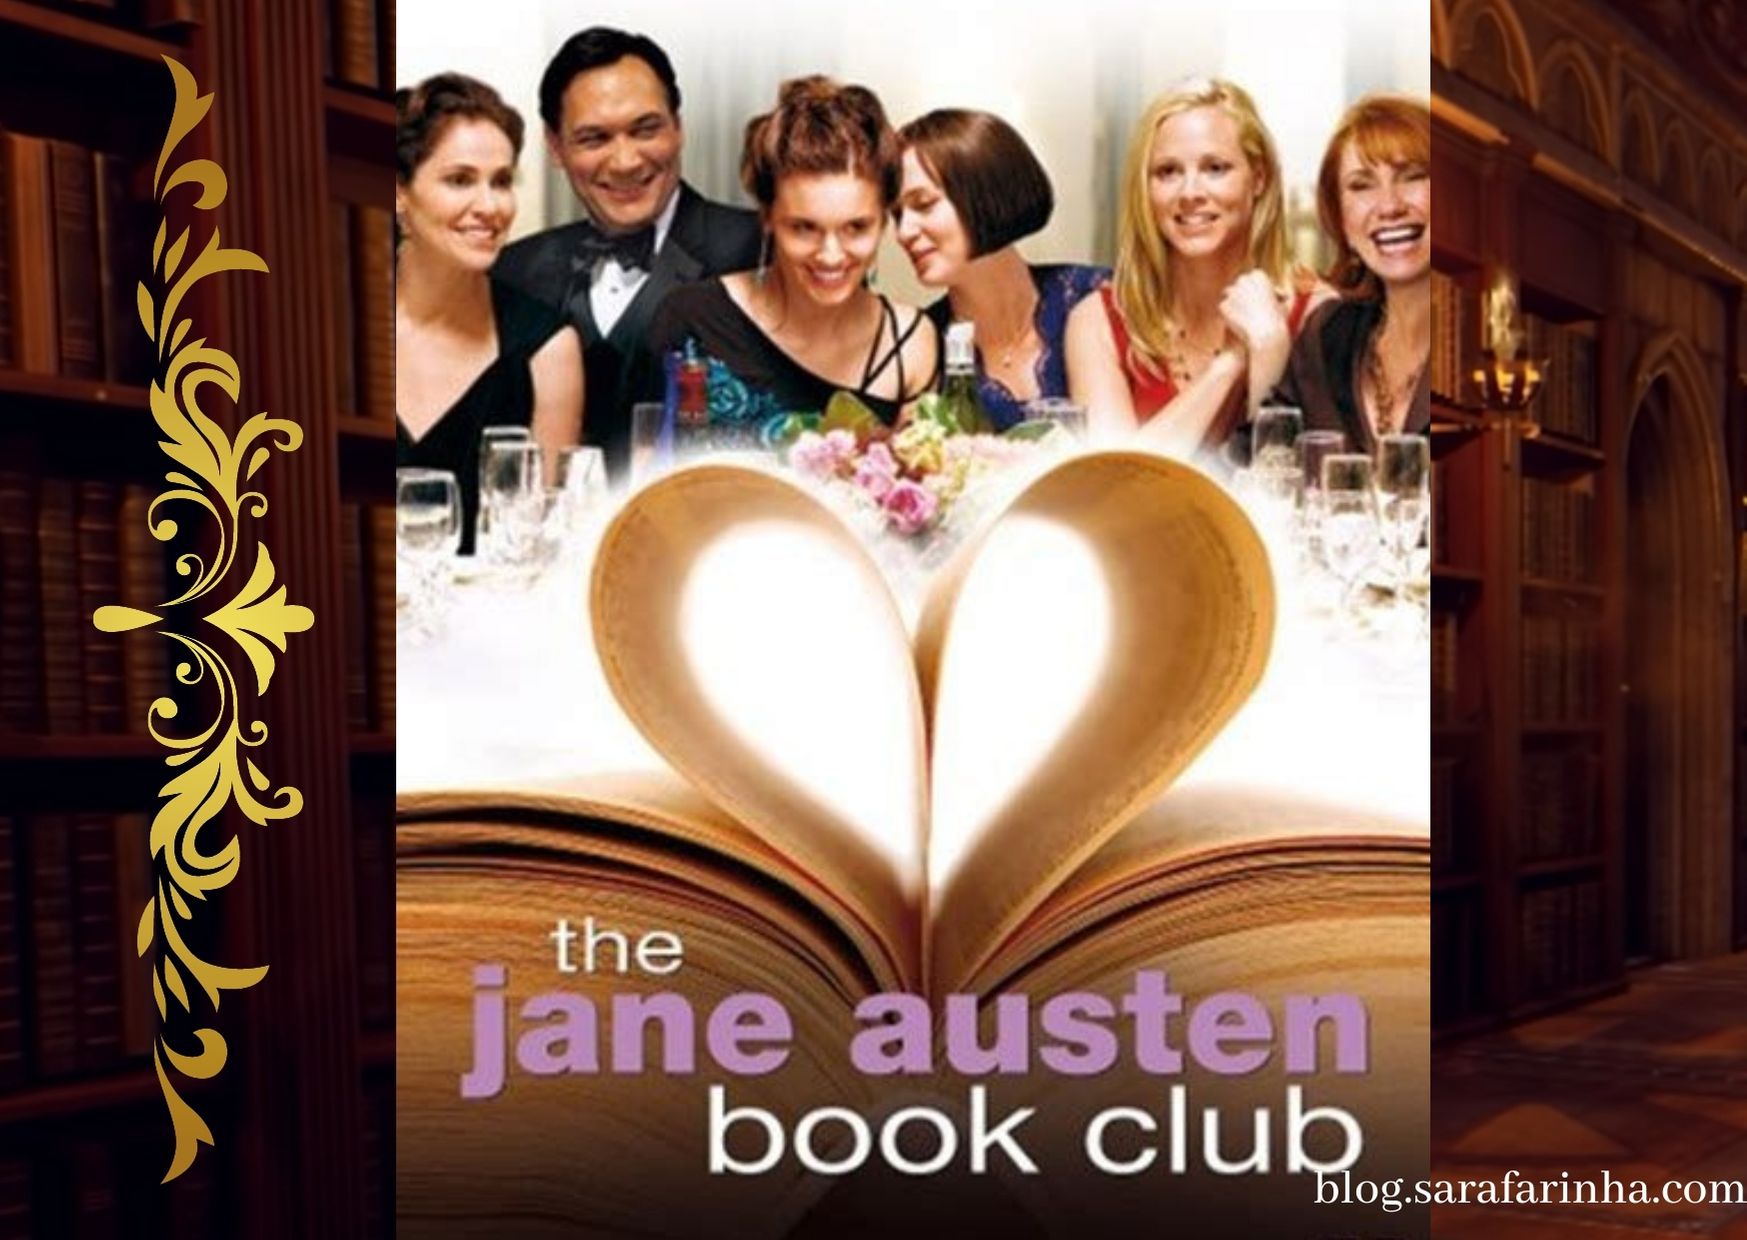 O clube de leitura de Jane Austen